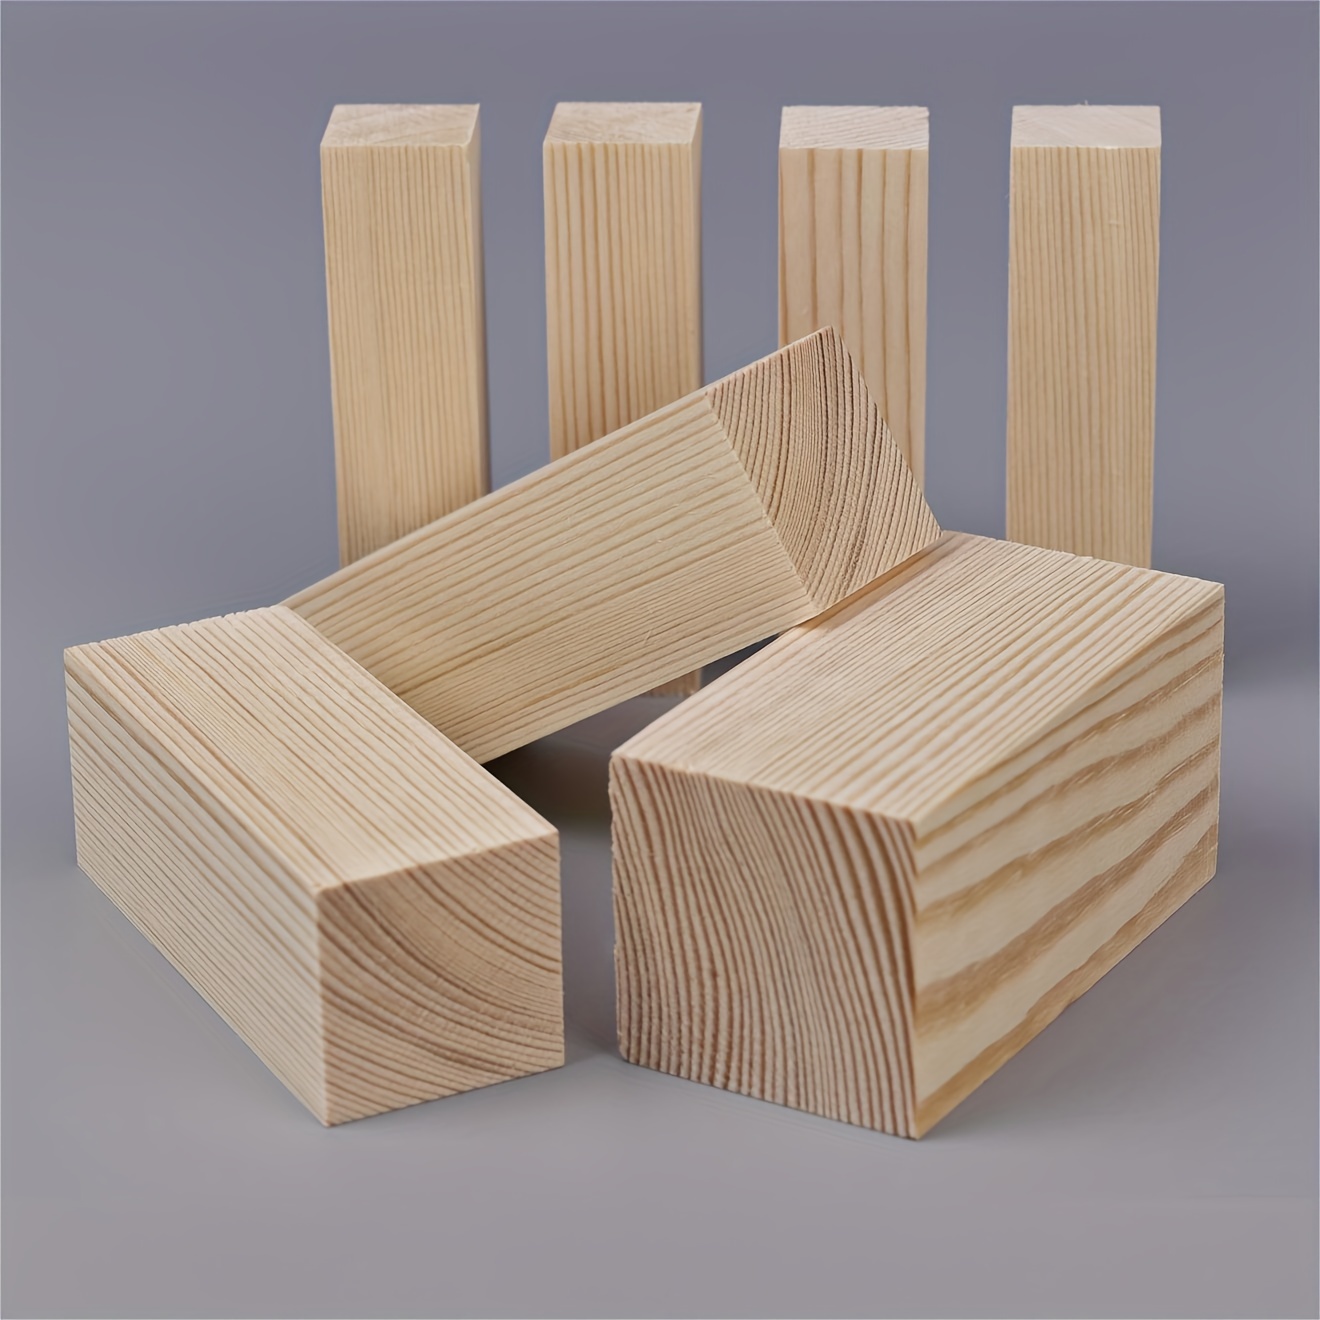 Basswood Carving Block Natural Soft Wood Carving Block 3 - Temu